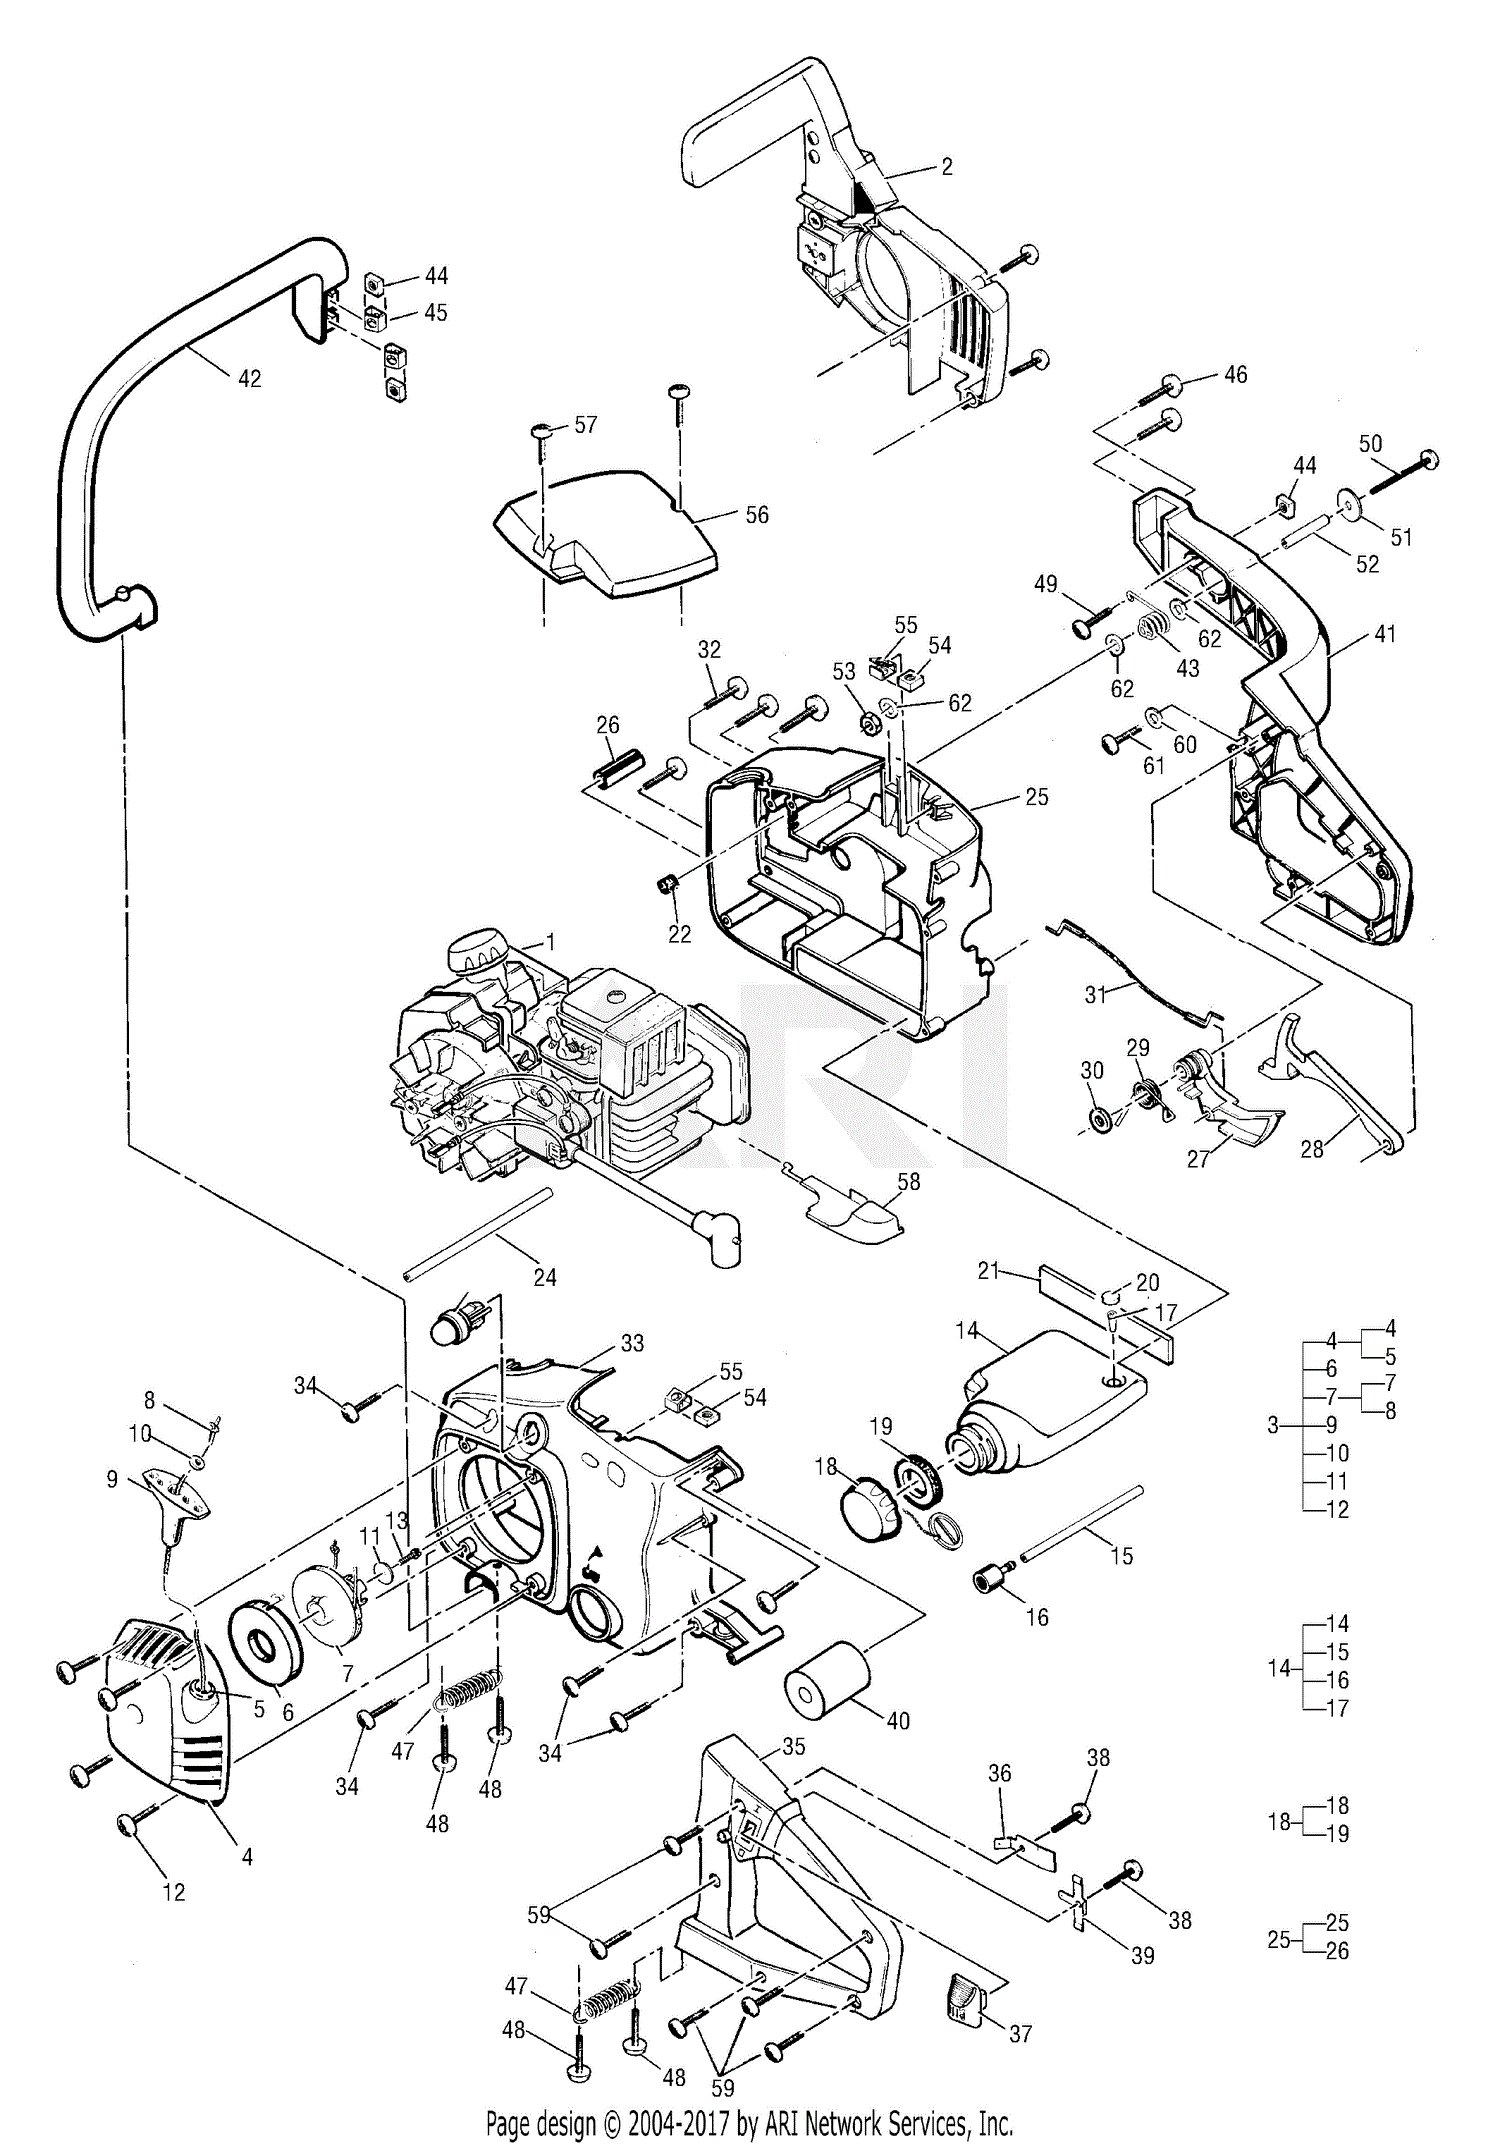 [DIAGRAM] Victa Power Torque Carburetor Diagram - MYDIAGRAM.ONLINE